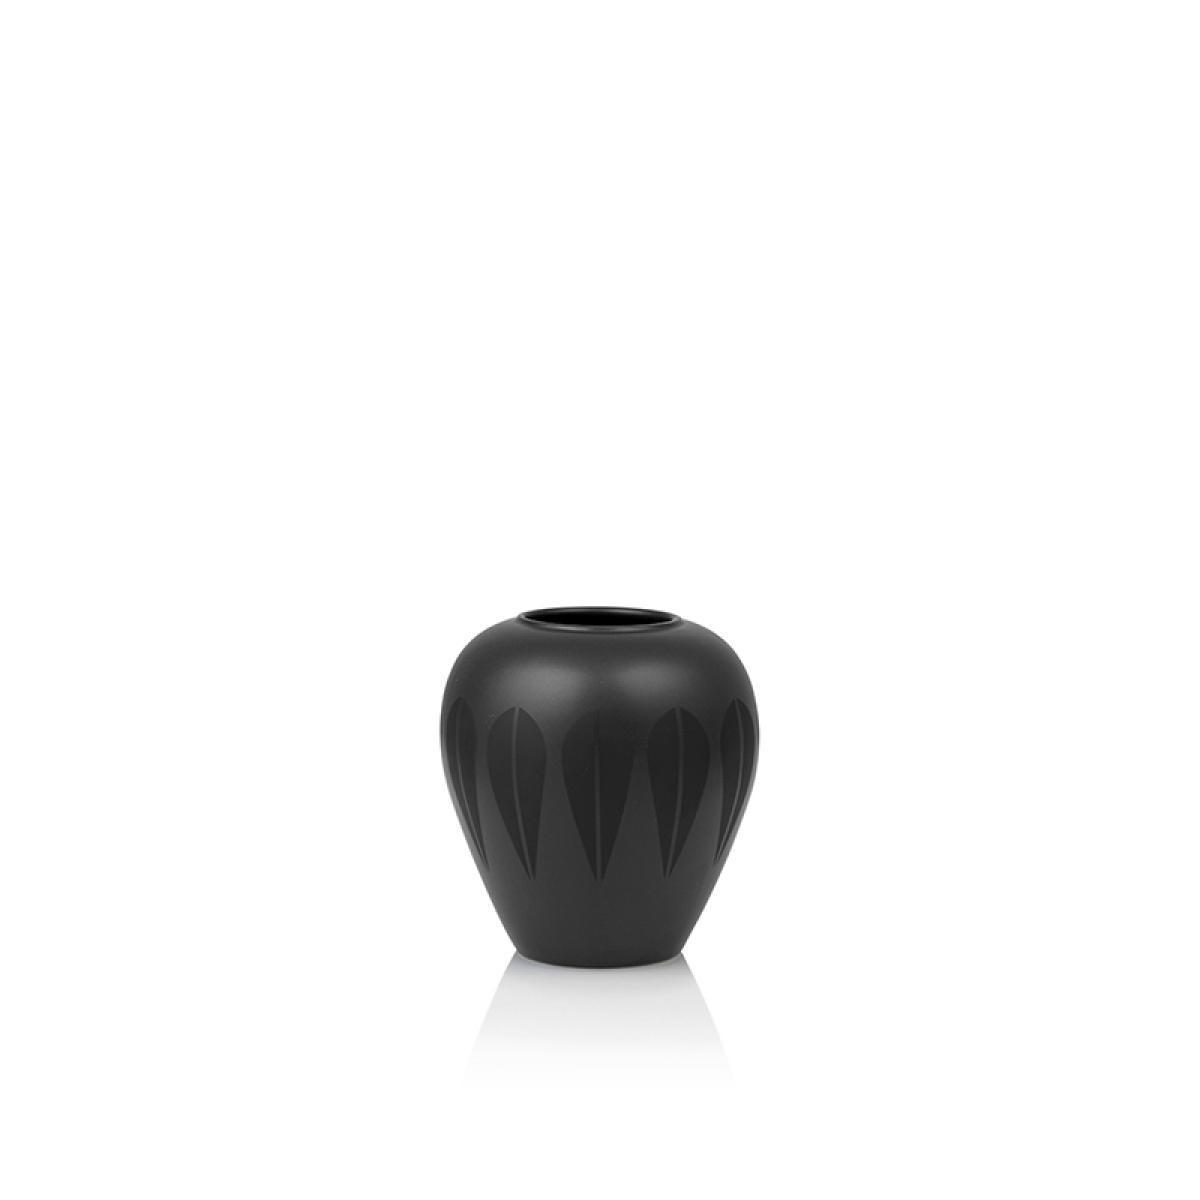 Lucie Kaas Arne Clausen Ceramic Vase Black, 11cm